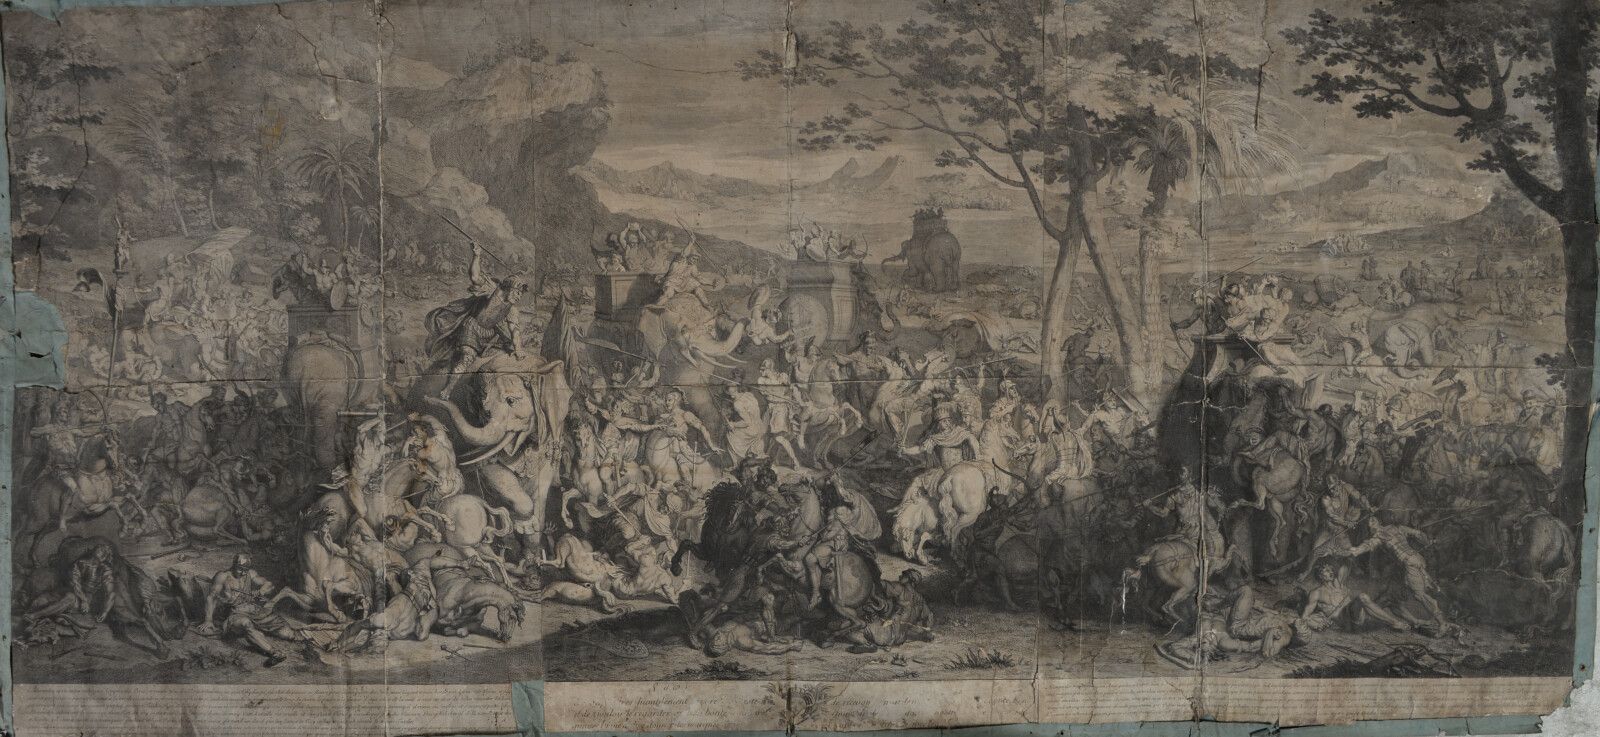 Null Bernard PICART (1673-1733)

Die Schlacht von Alexander

Schwarzer Kupfersti&hellip;